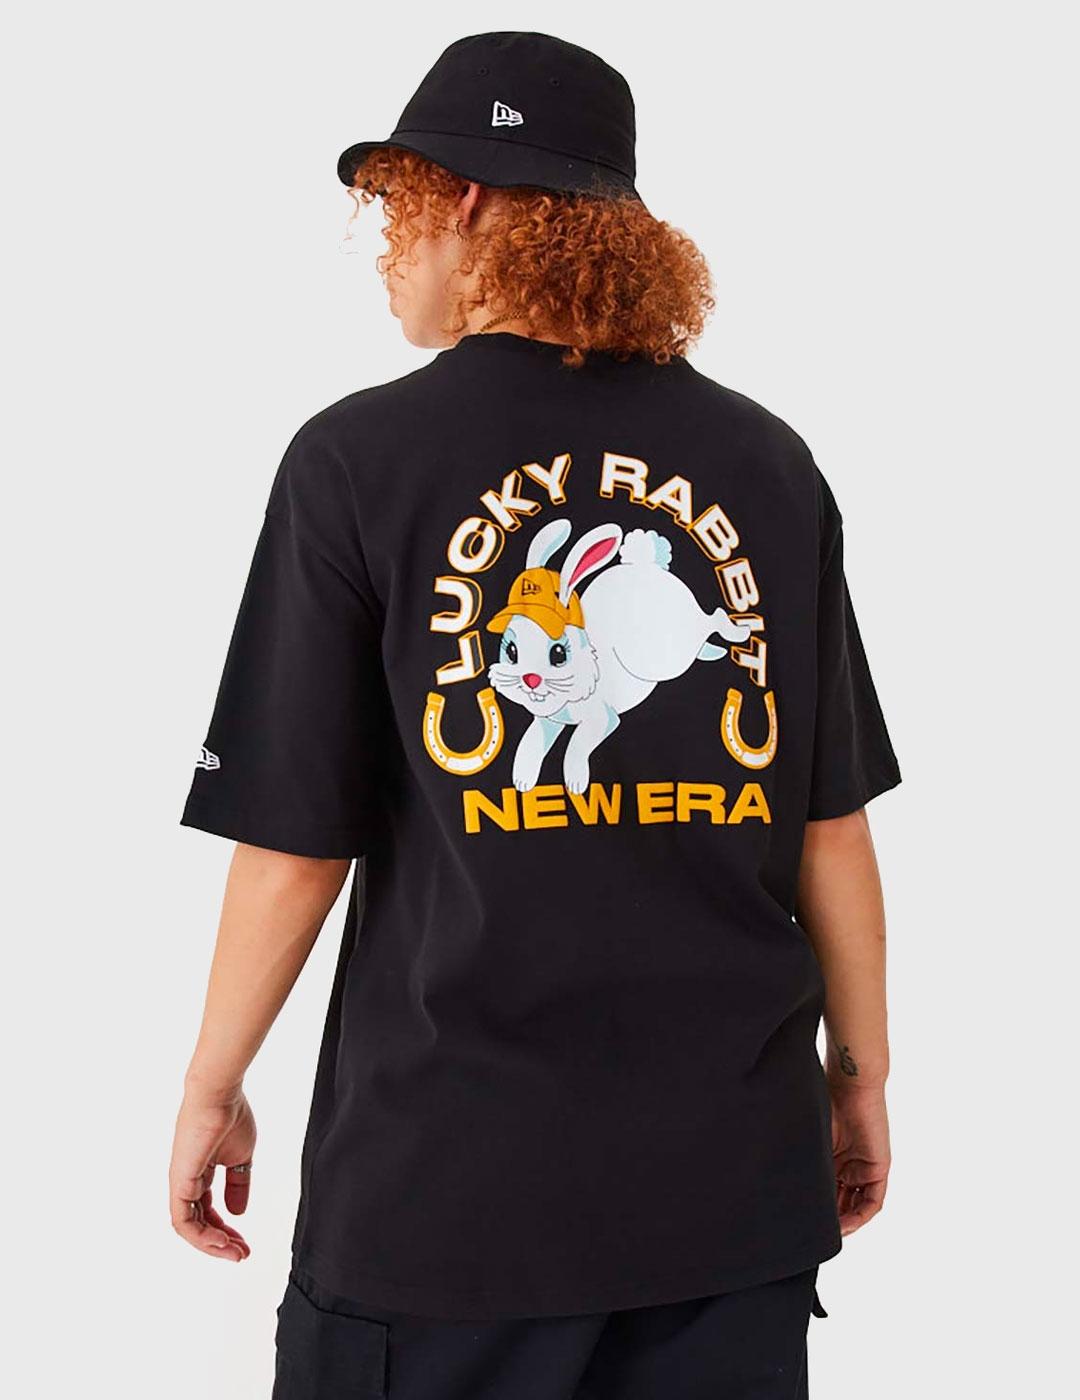 Camiseta New Era Character negra para hombre y mujer